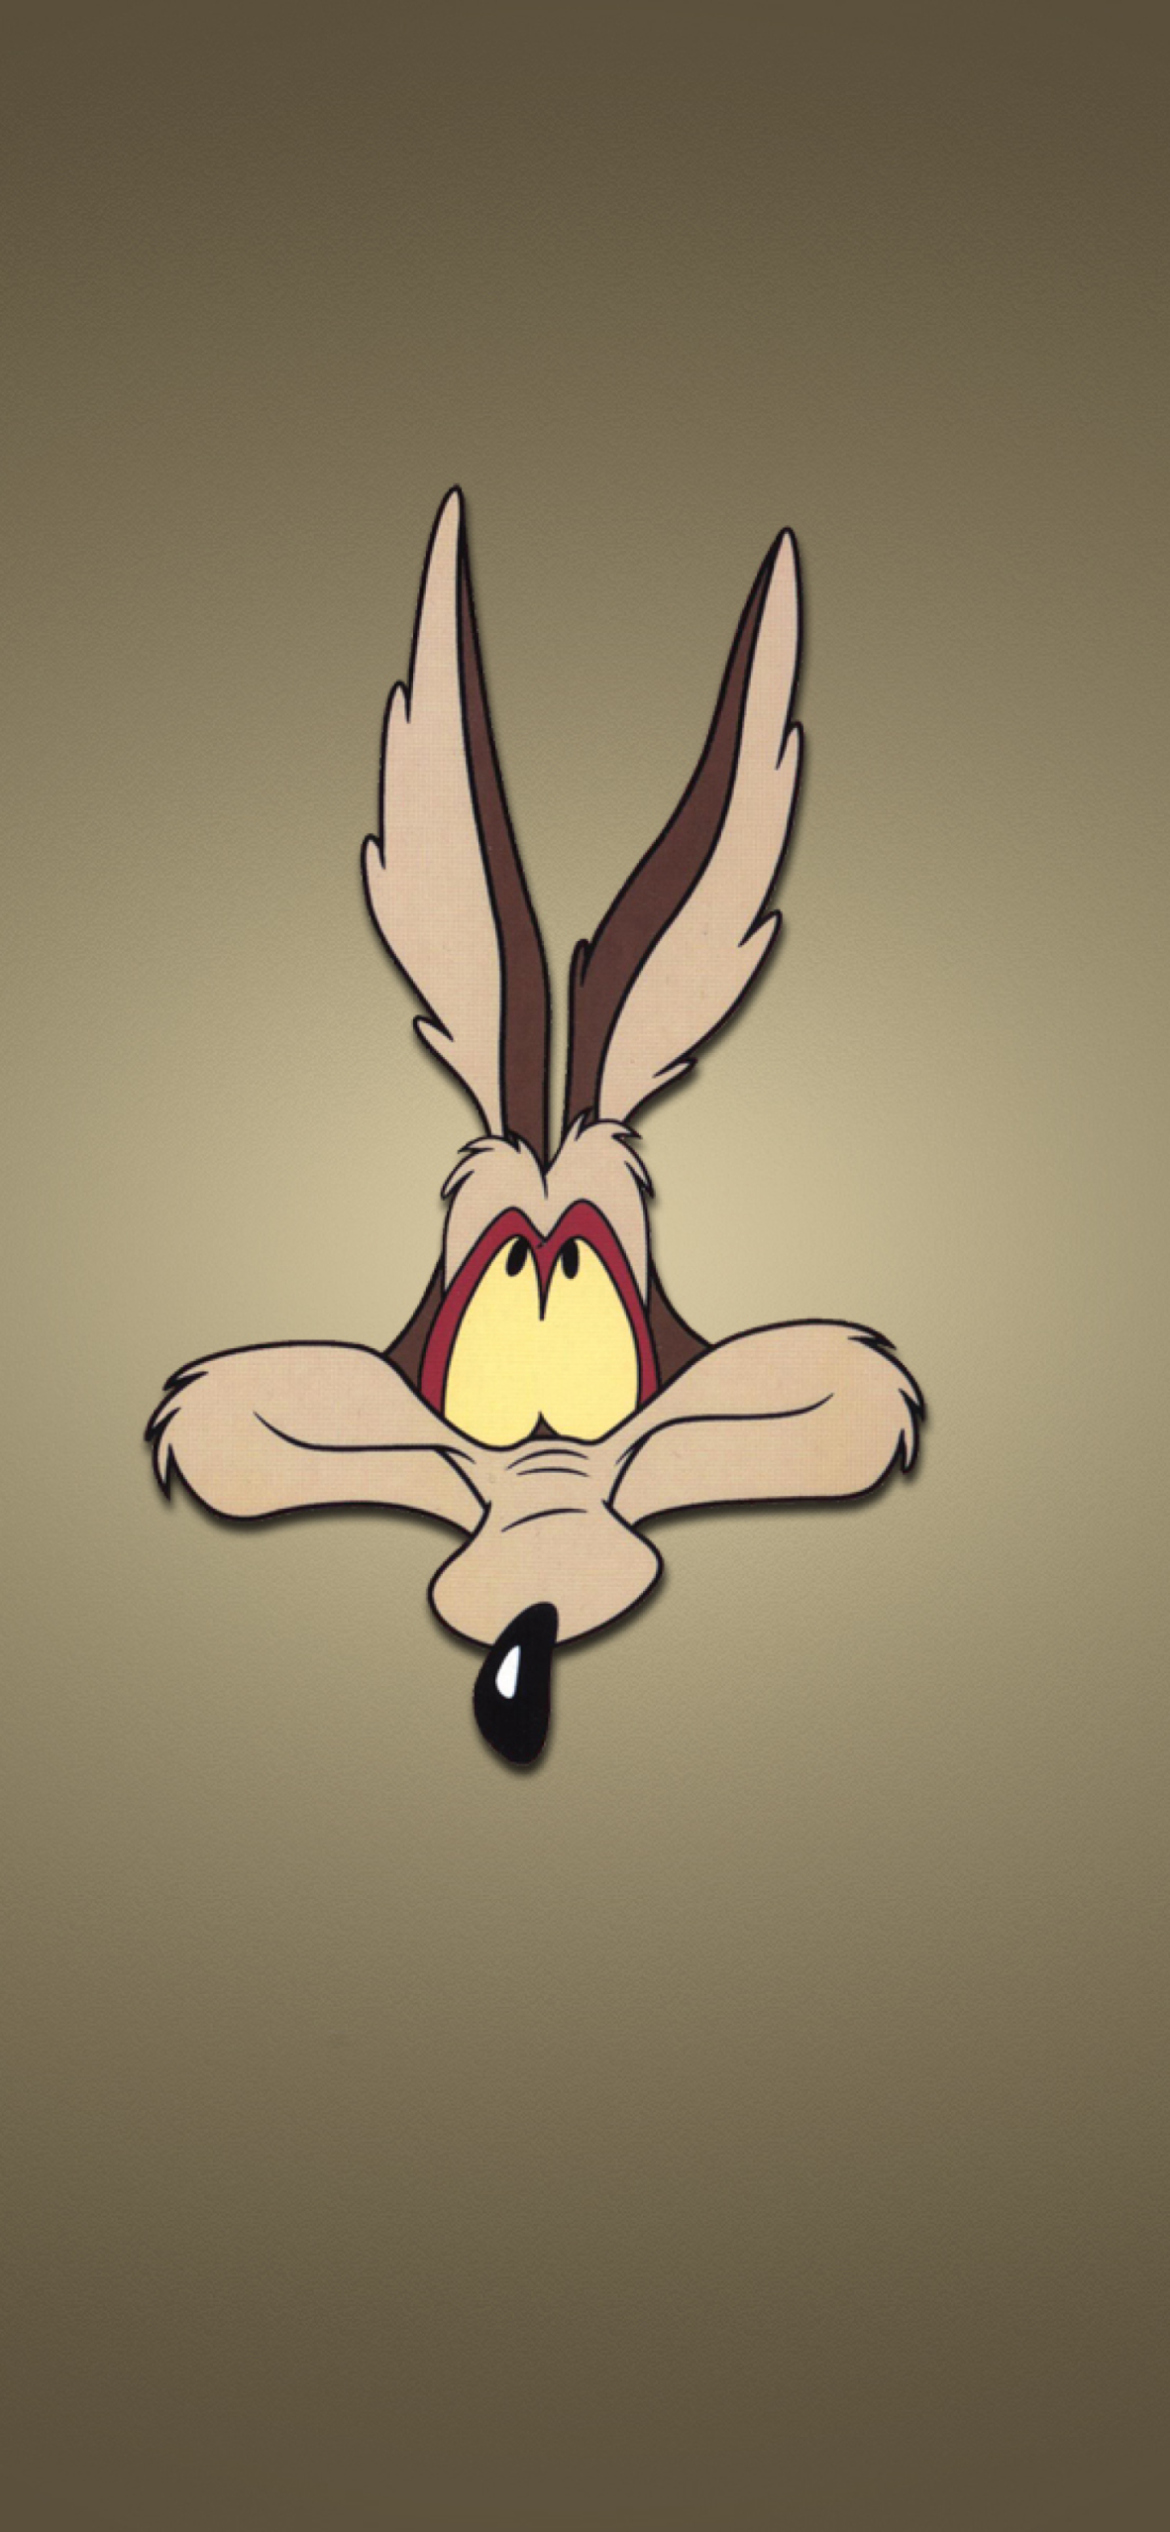 Sfondi Looney Tunes Wile E. Coyote 1170x2532